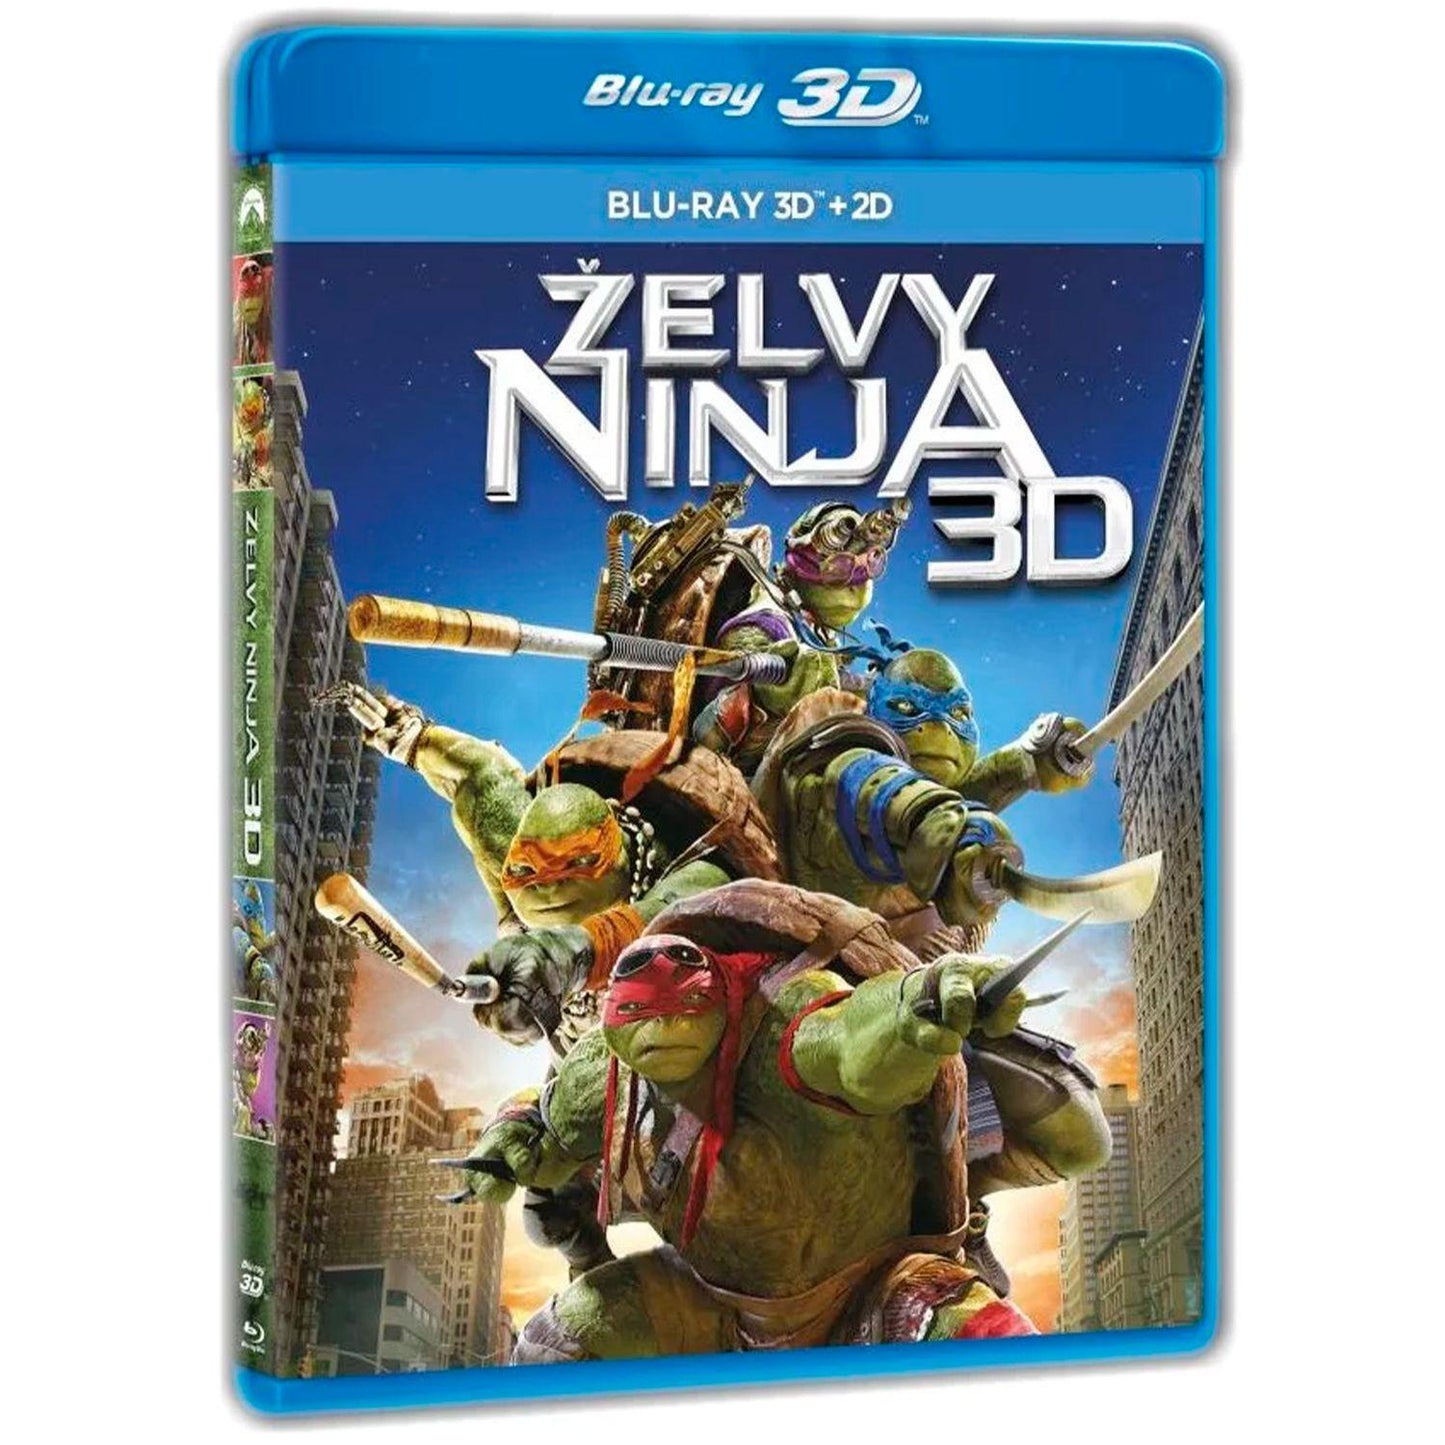 Черепашки-ниндзя 3D + 2D (2 Blu-ray)